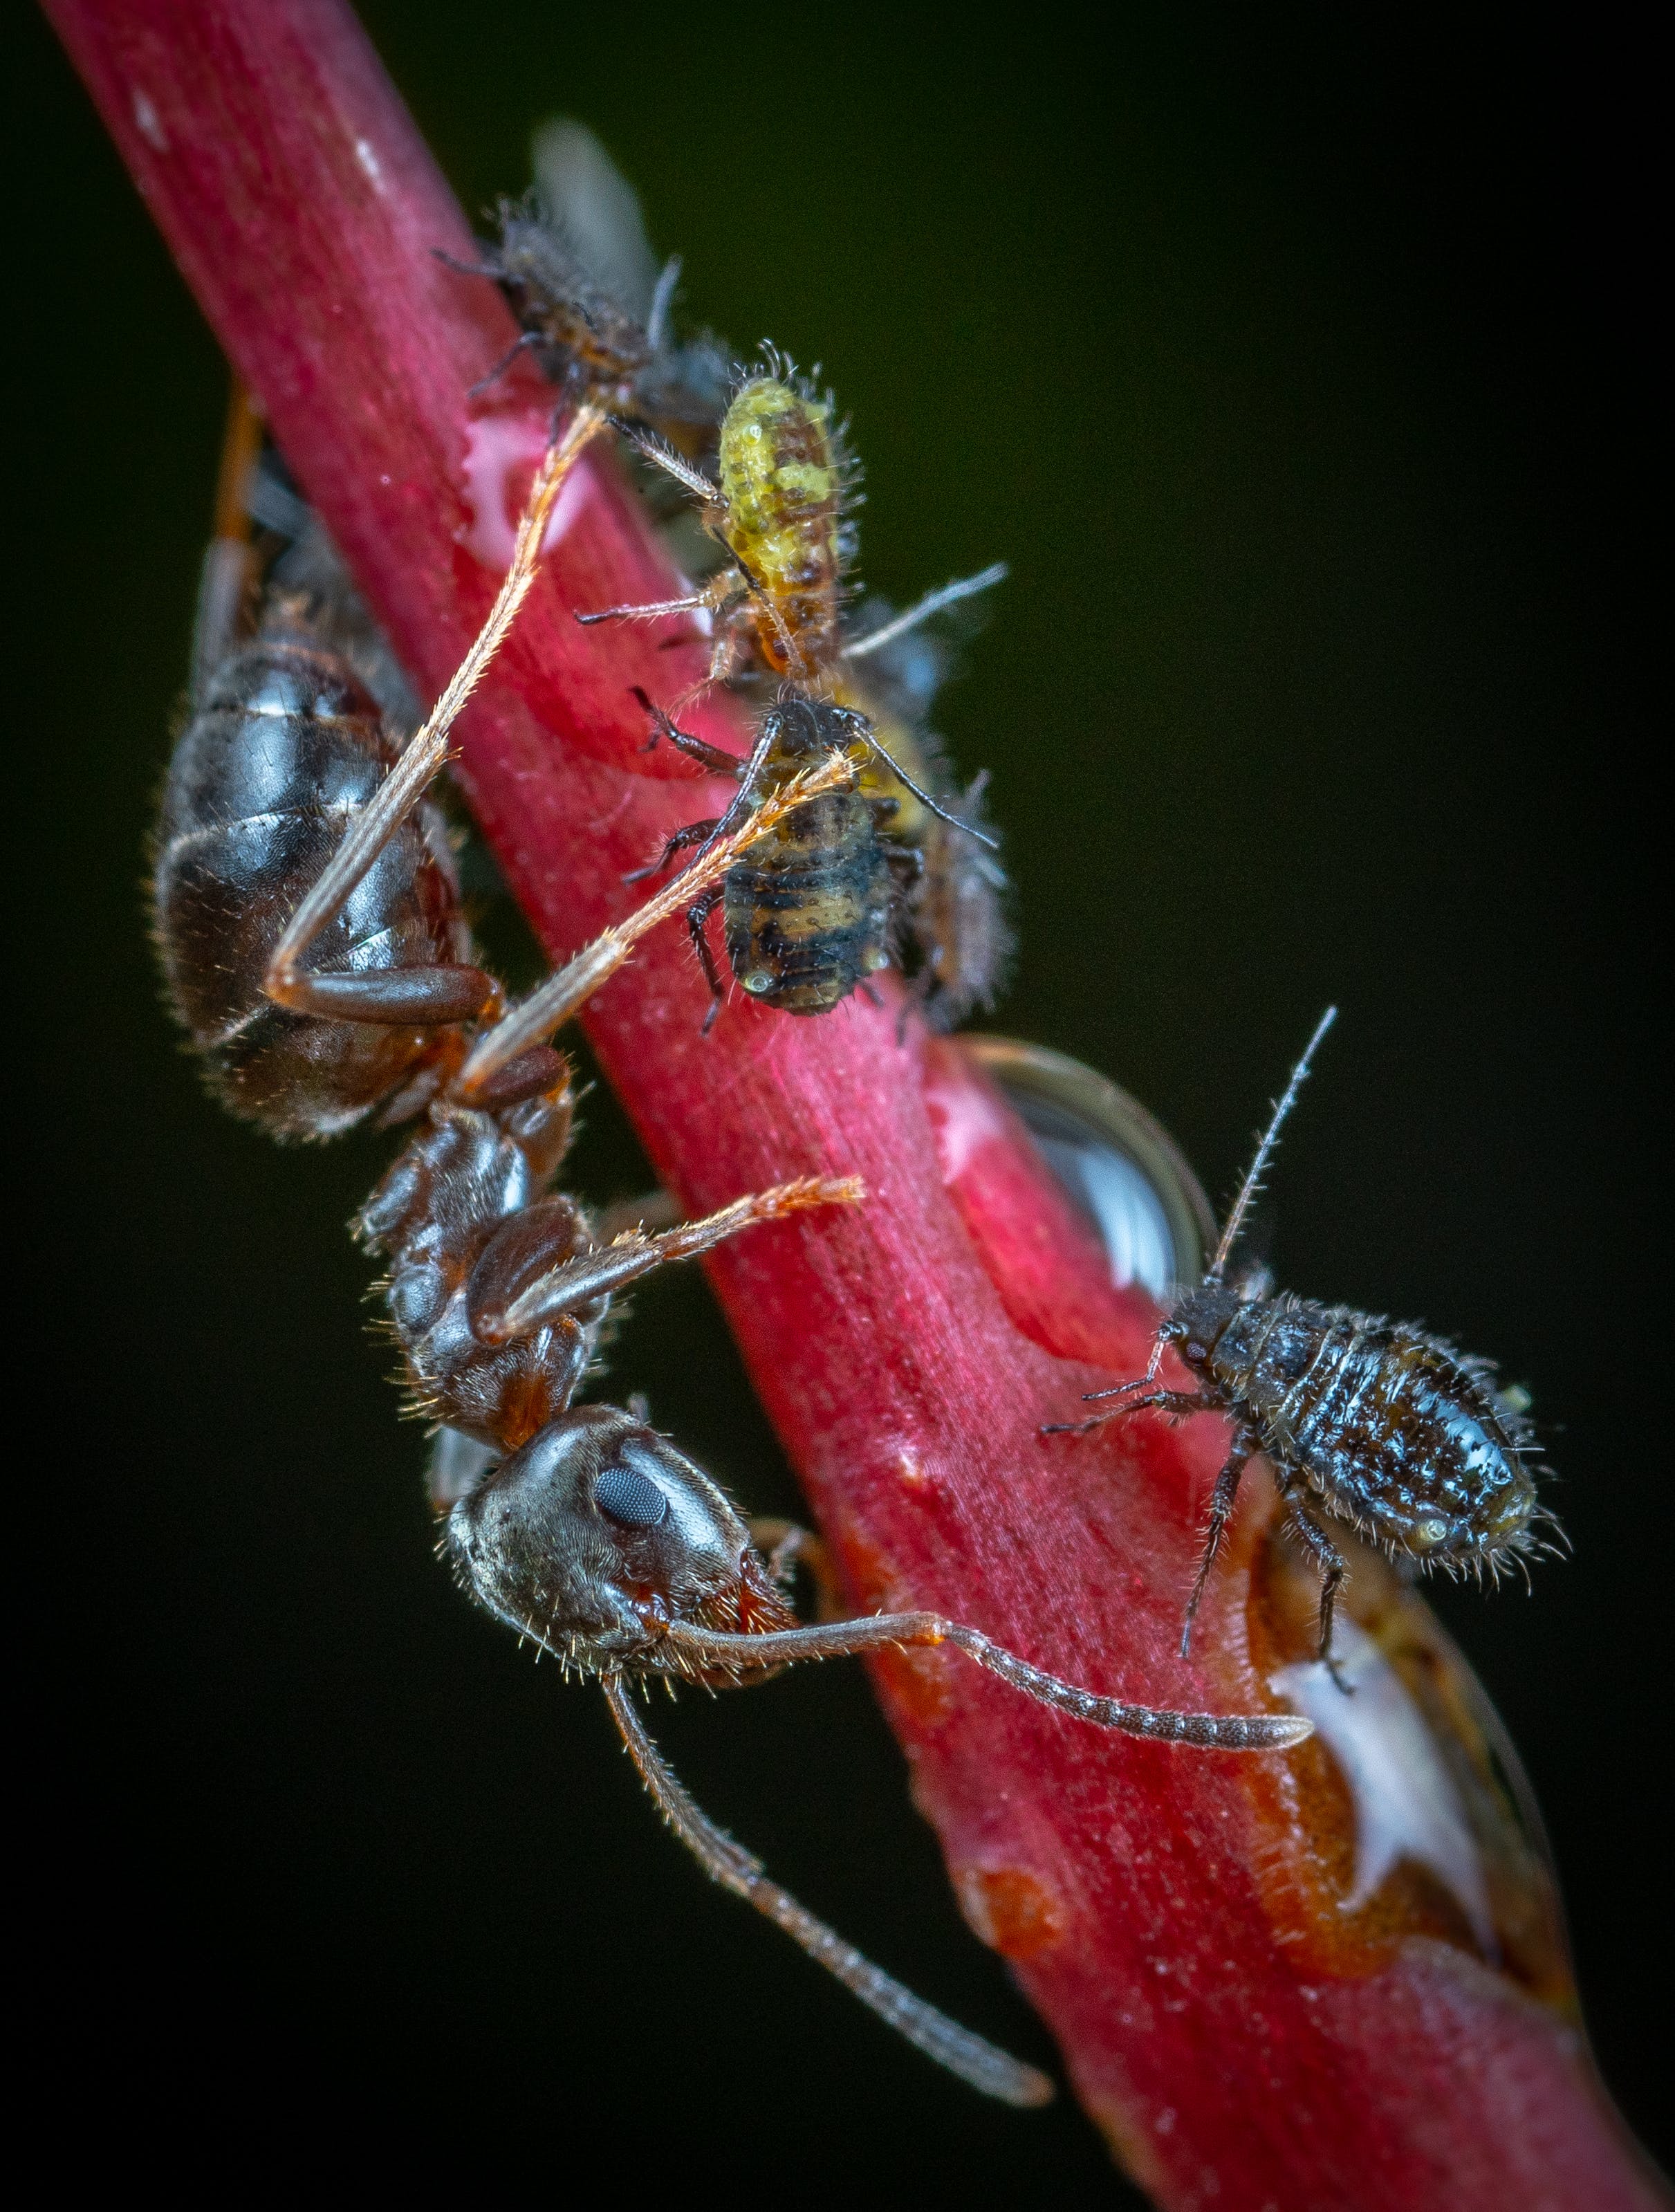 Gratis Fotos de stock gratuitas de de cerca, disparo macro, fotografía de insectos Foto de stock